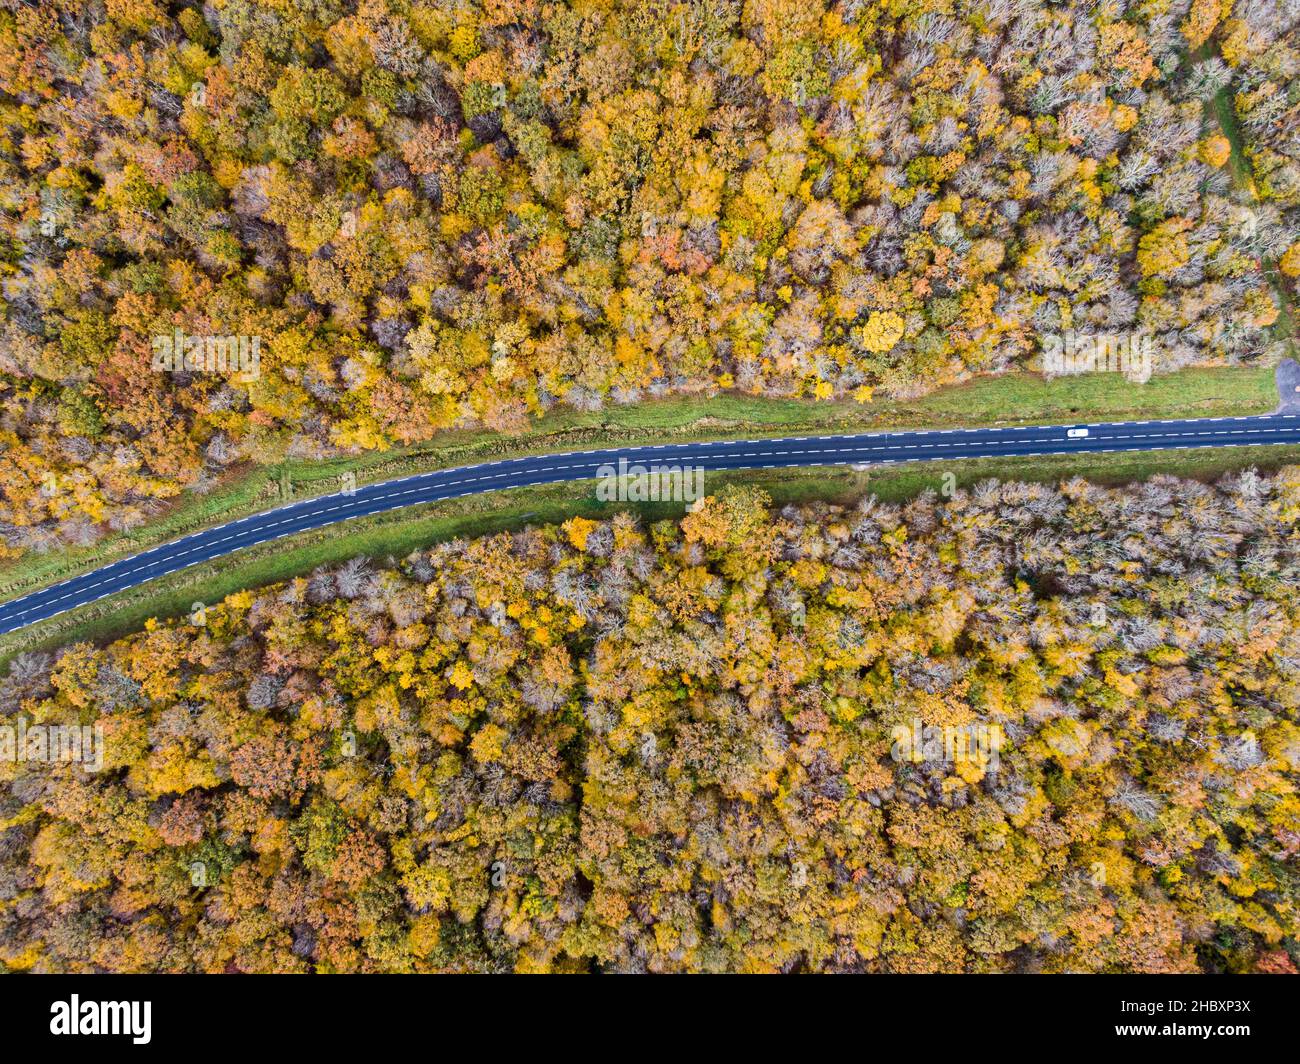 Camino forestal con coche blanco durante el otoño. Vista aérea de la carretera que cruza un bosque de árboles caducifolios amarillo y oro, otoño Foto de stock